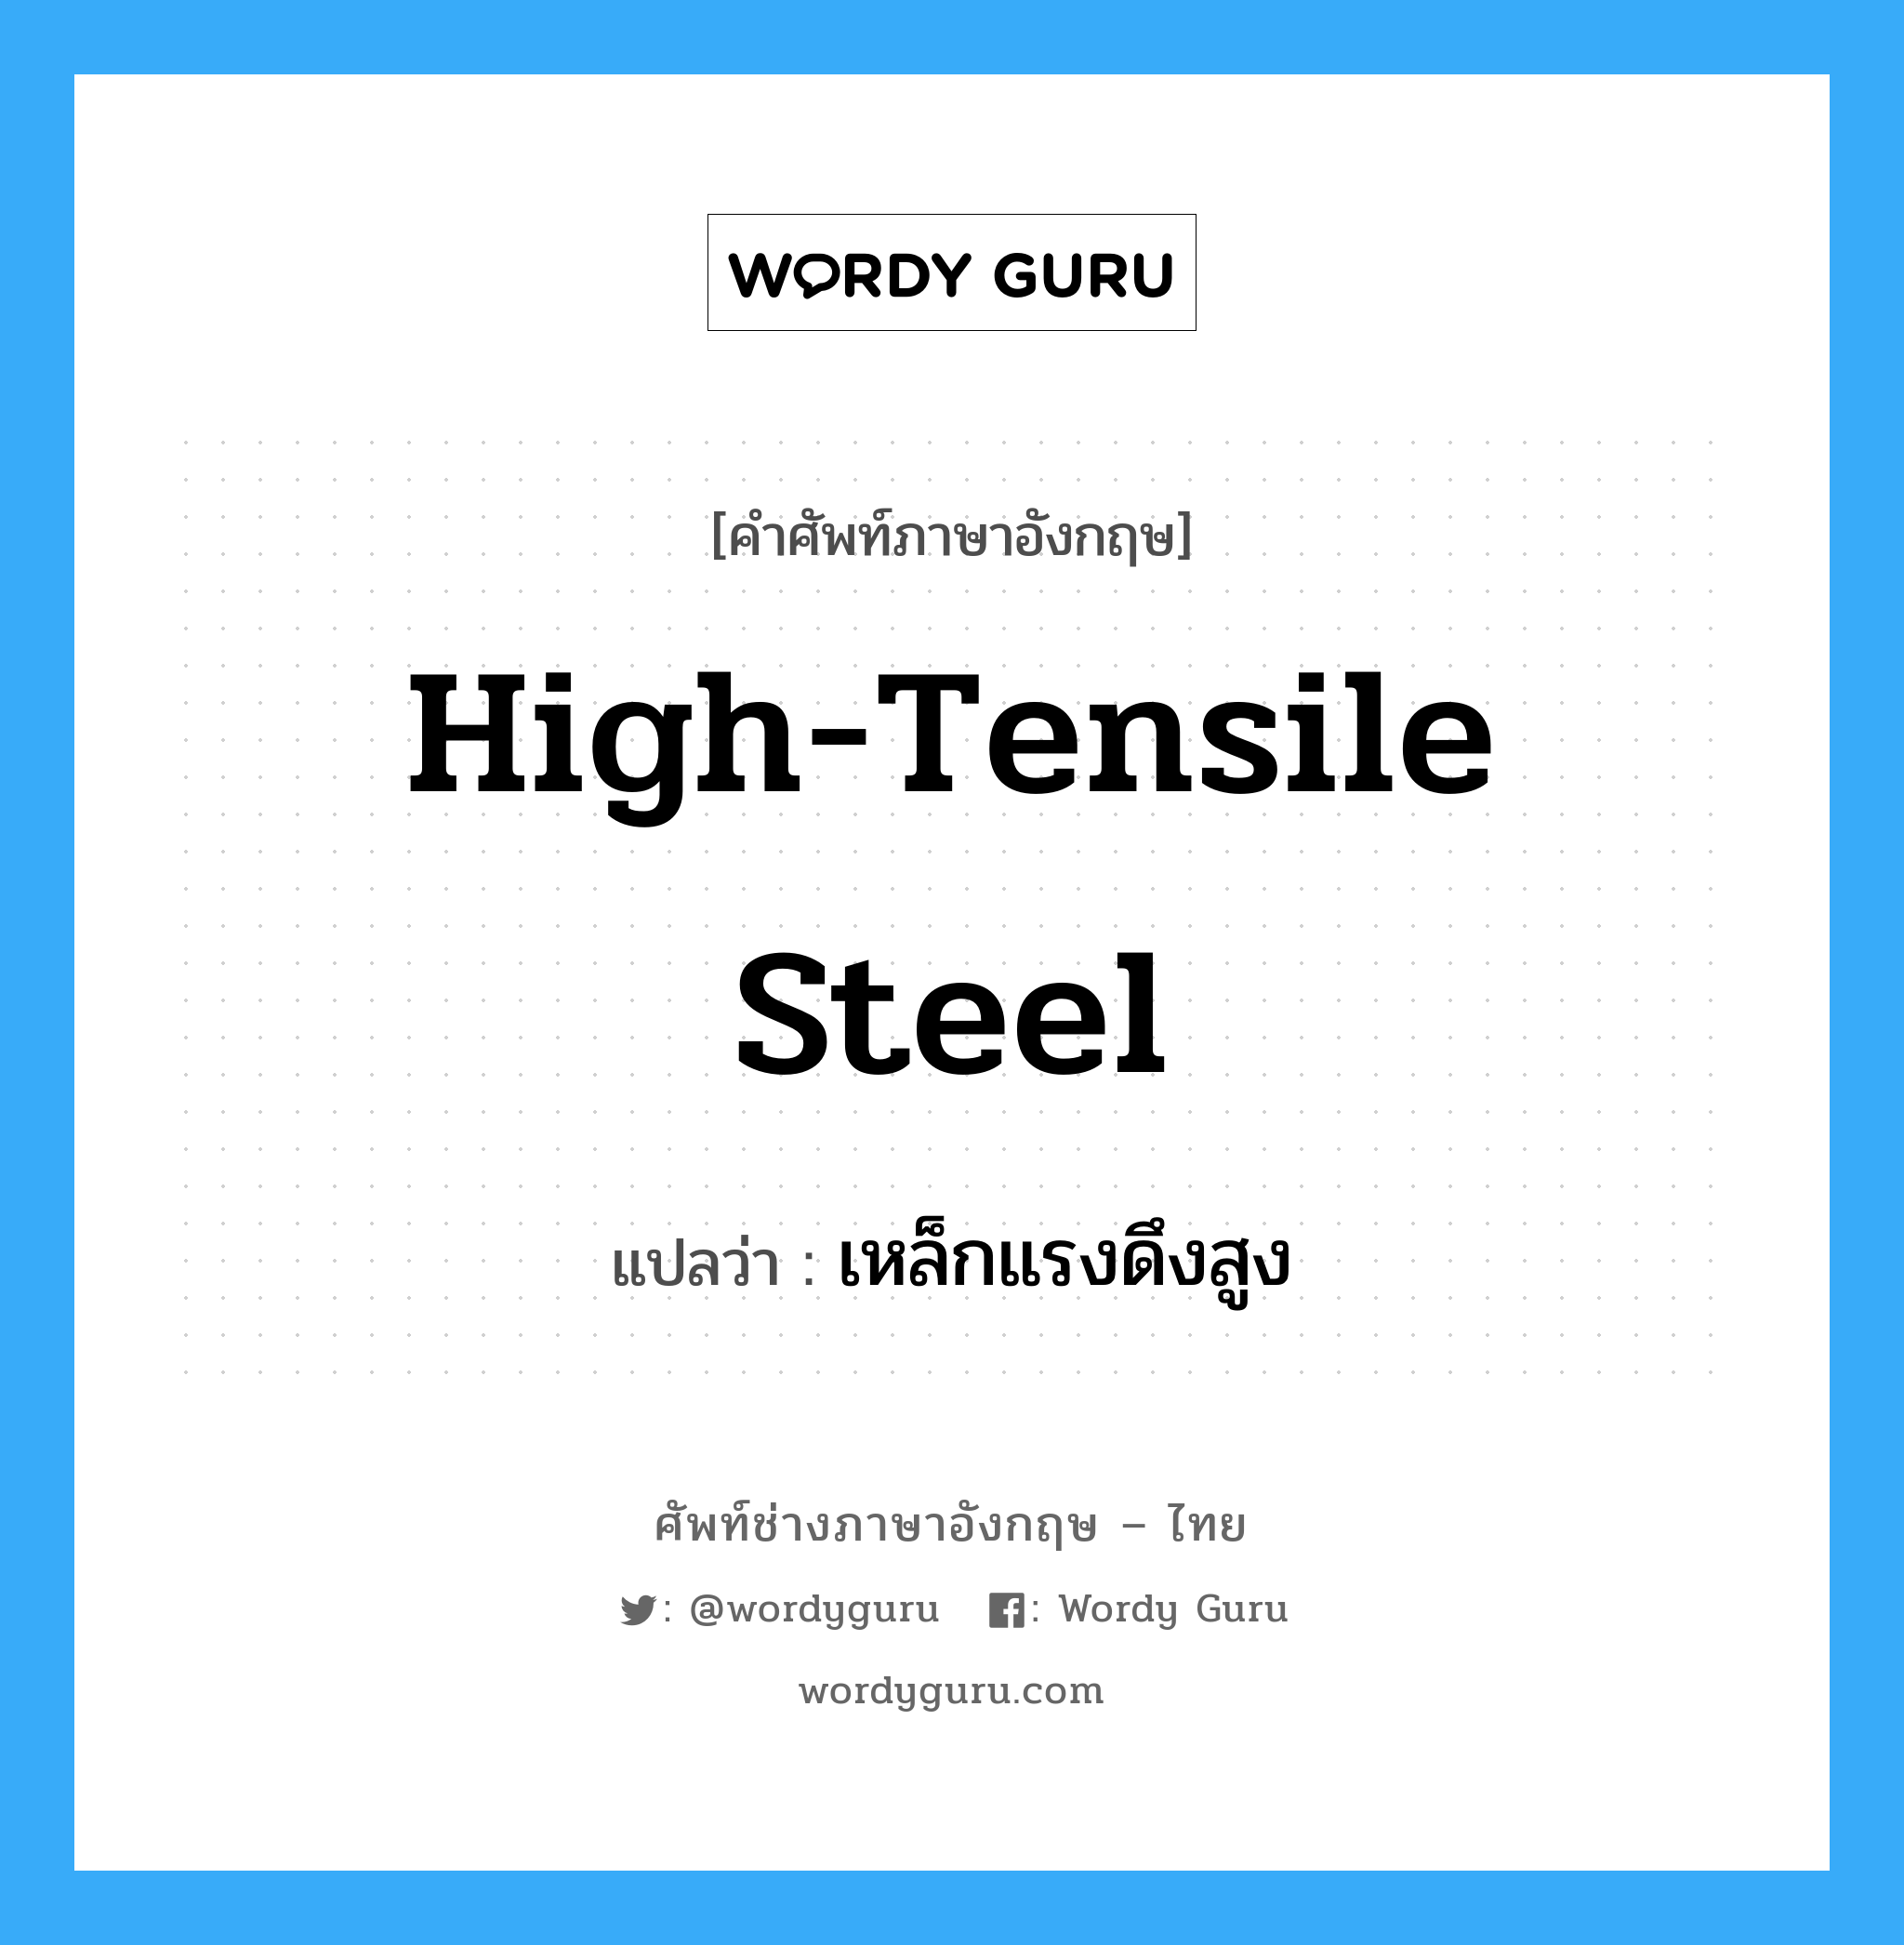 เหล็กแรงดึงสูง ภาษาอังกฤษ?, คำศัพท์ช่างภาษาอังกฤษ - ไทย เหล็กแรงดึงสูง คำศัพท์ภาษาอังกฤษ เหล็กแรงดึงสูง แปลว่า high-tensile steel